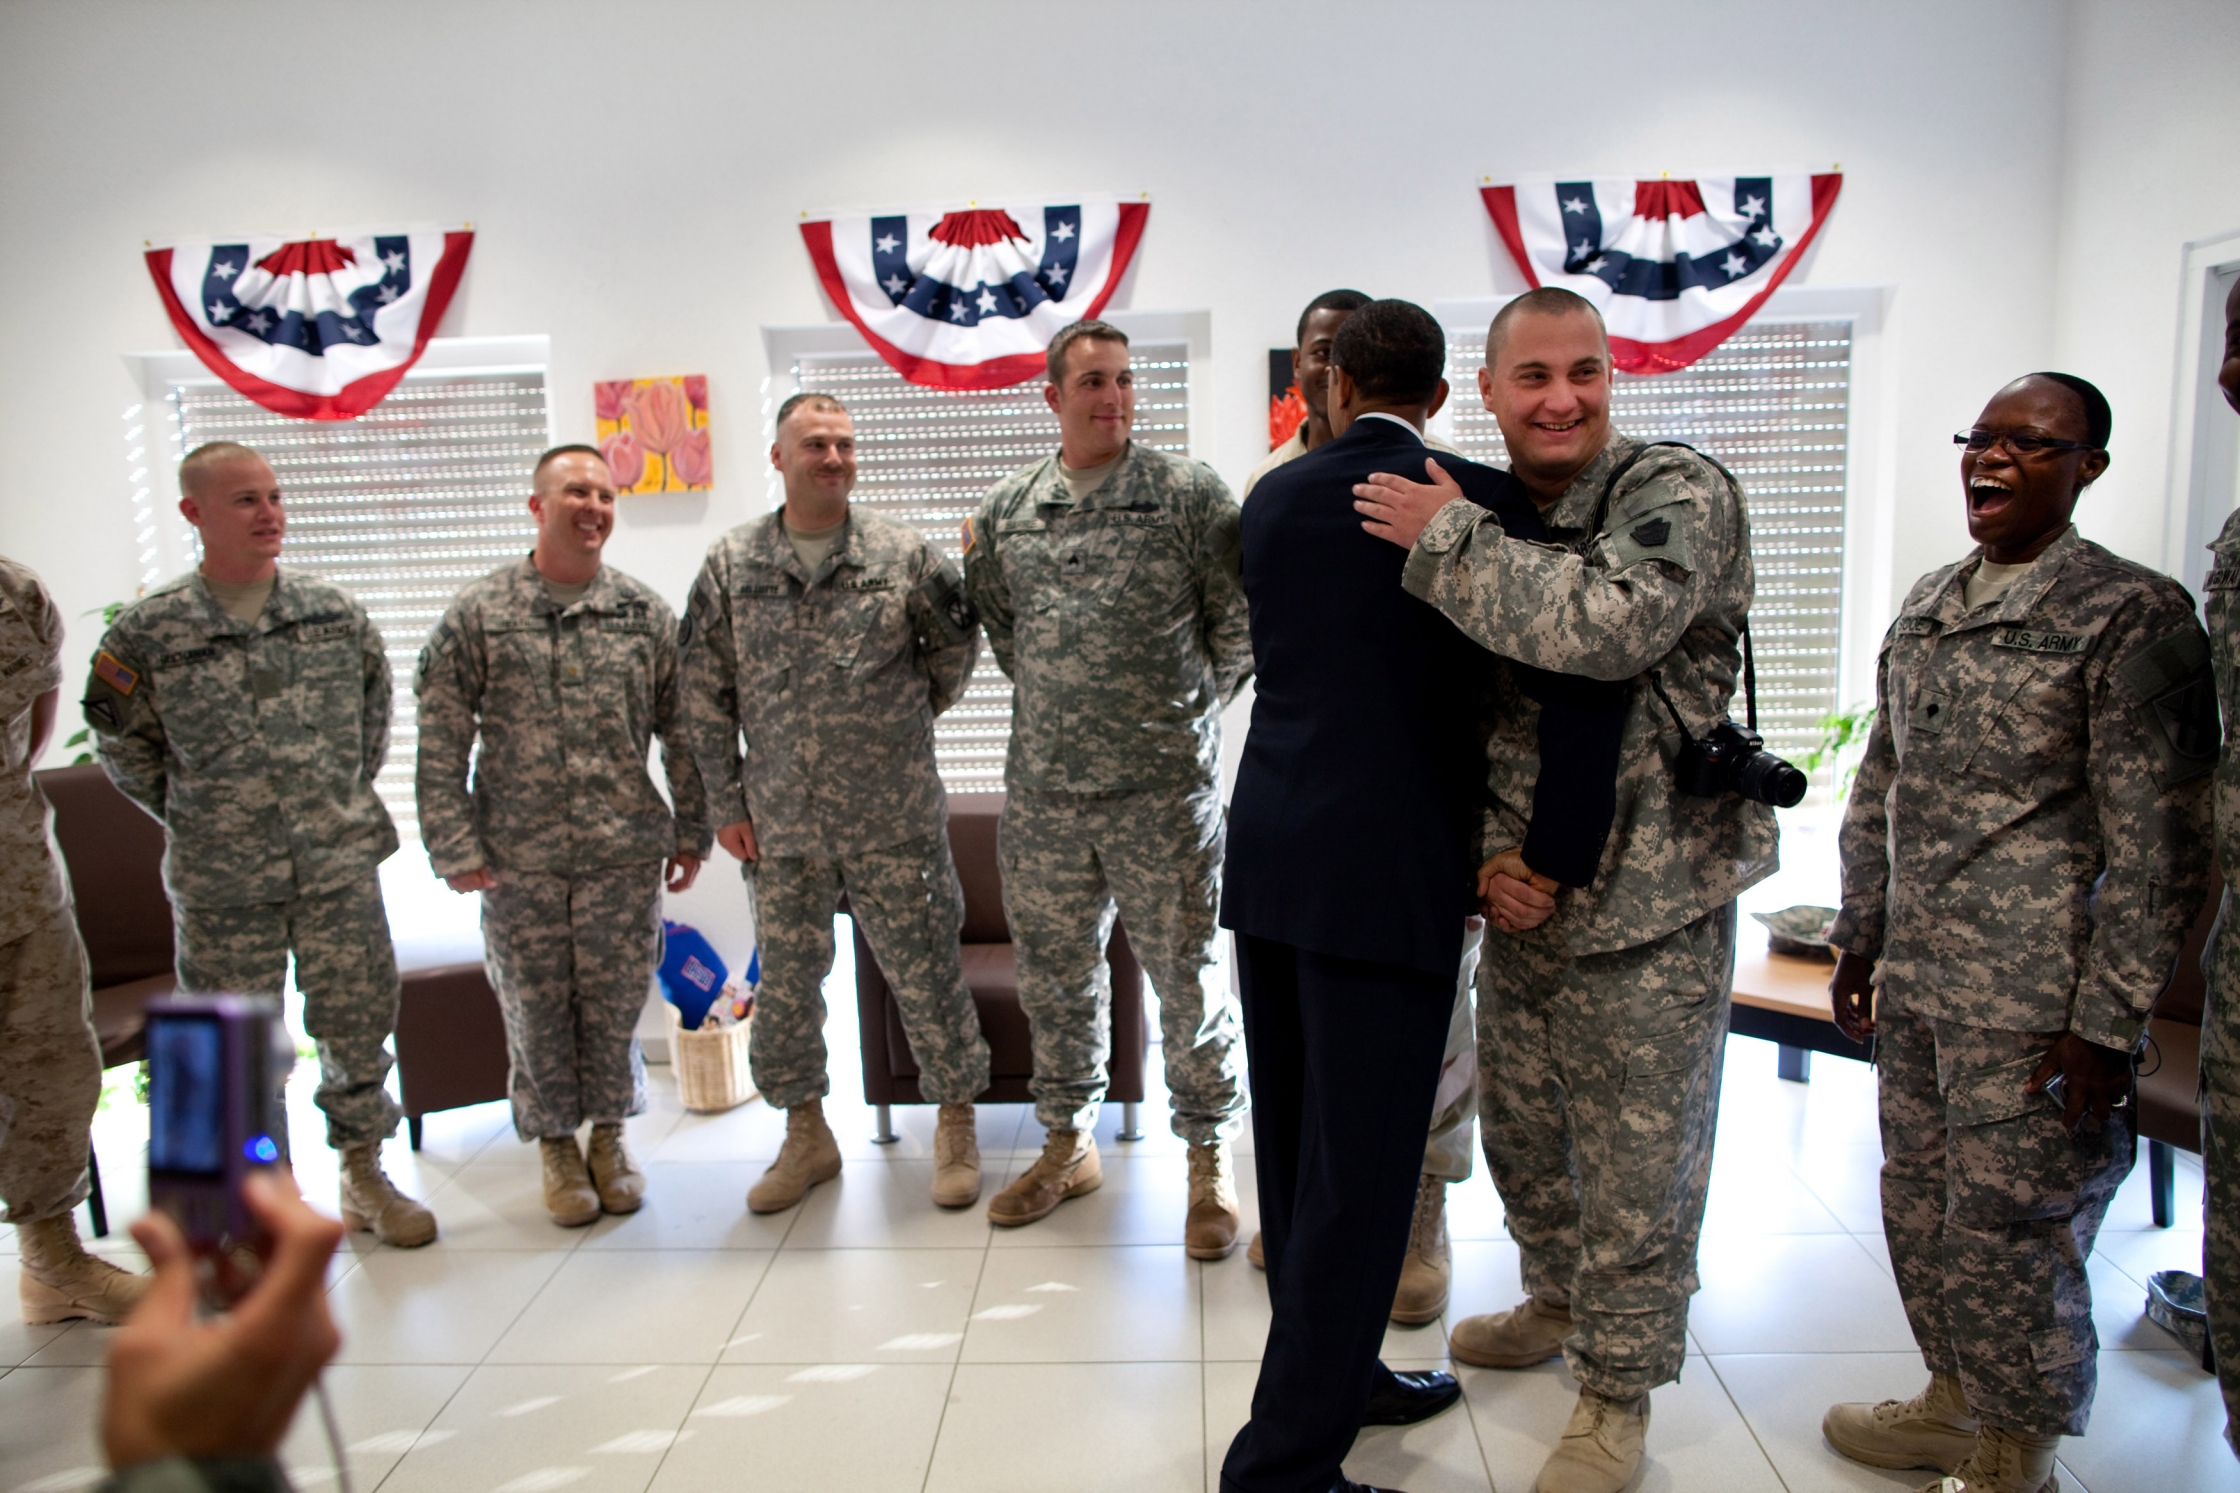 President Barack Obama visits soldiers at the USO at Landstuhl Regional Medical Center in Germany